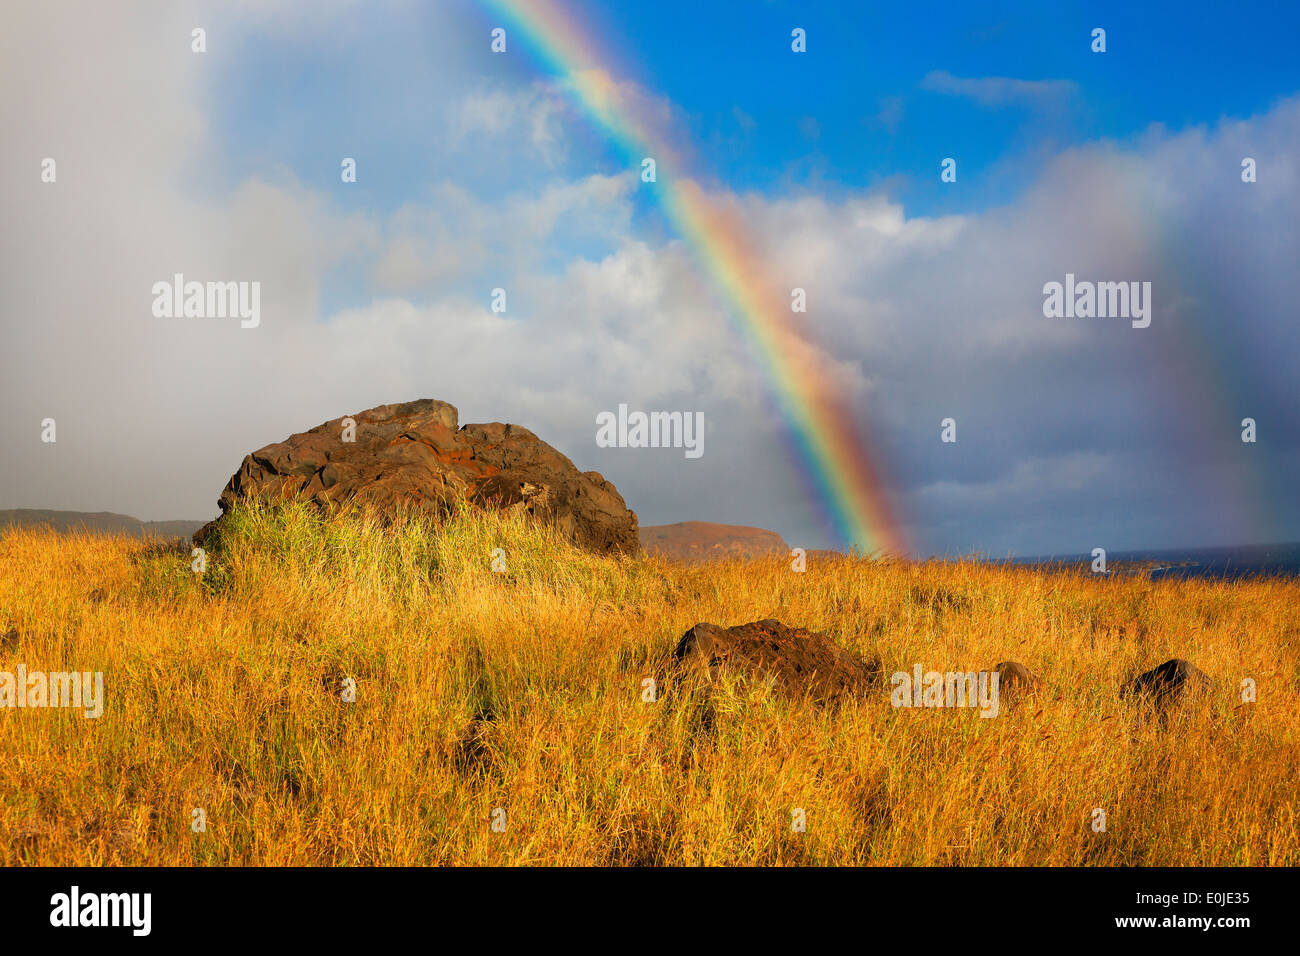 Hawaii-Regenbogen über goldenen Feld Maui, Hawaii Stockfoto